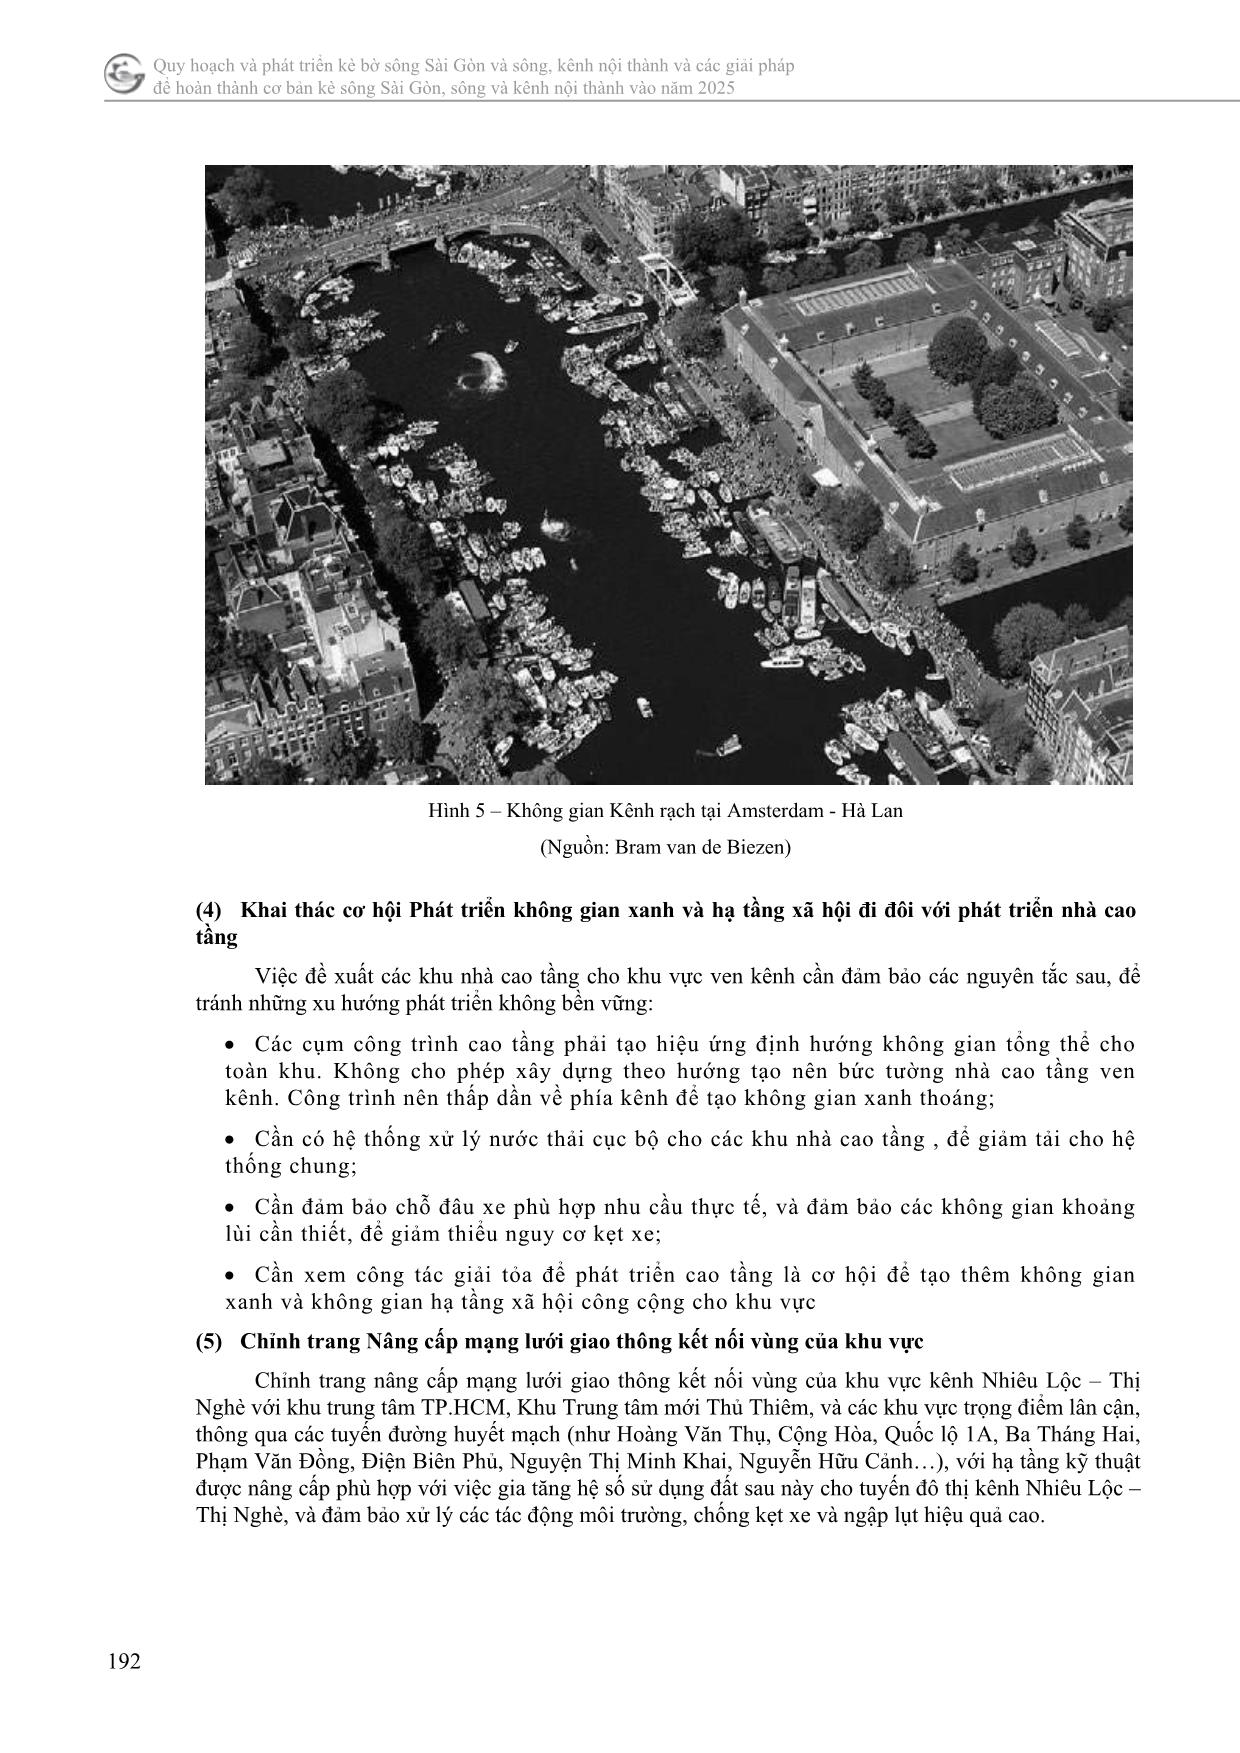 Chỉnh trang quy hoạch kiến trúc cảnh quan kênh nhiêu lộc - Thị Nghè thành phố Hồ Chí Minh trang 7